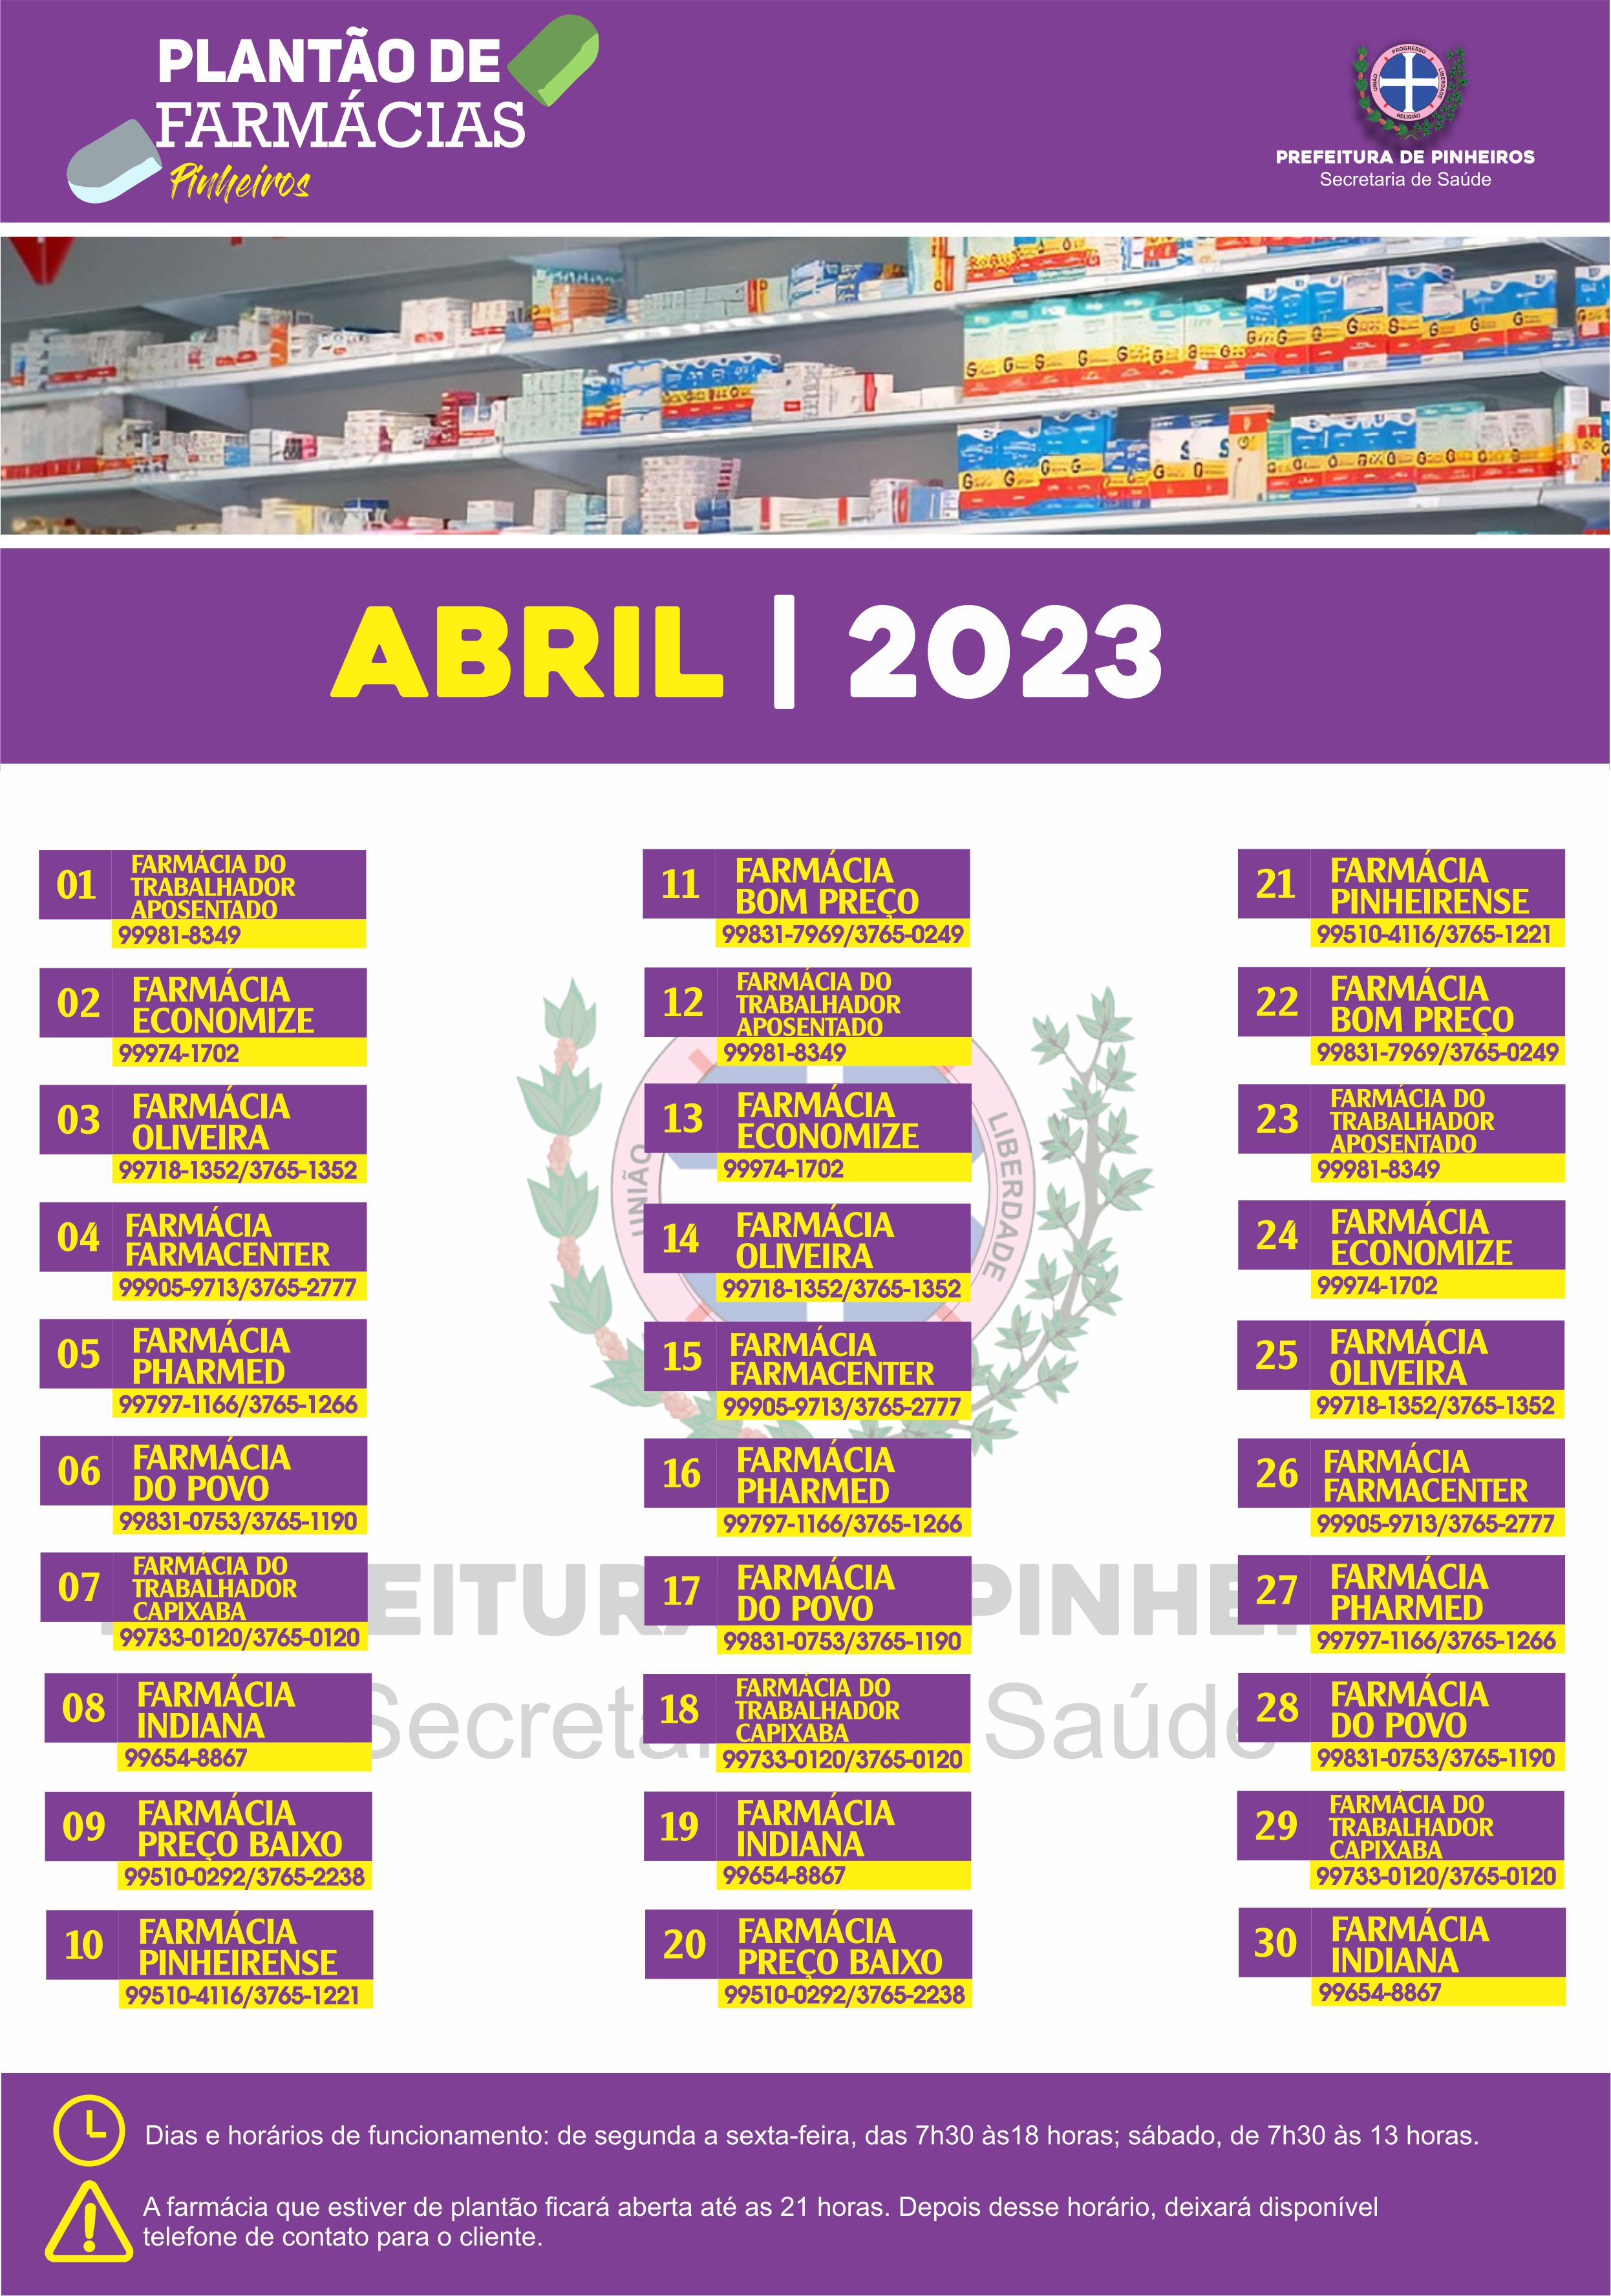 Calendário do Plantão de Farmácias do mês de abril